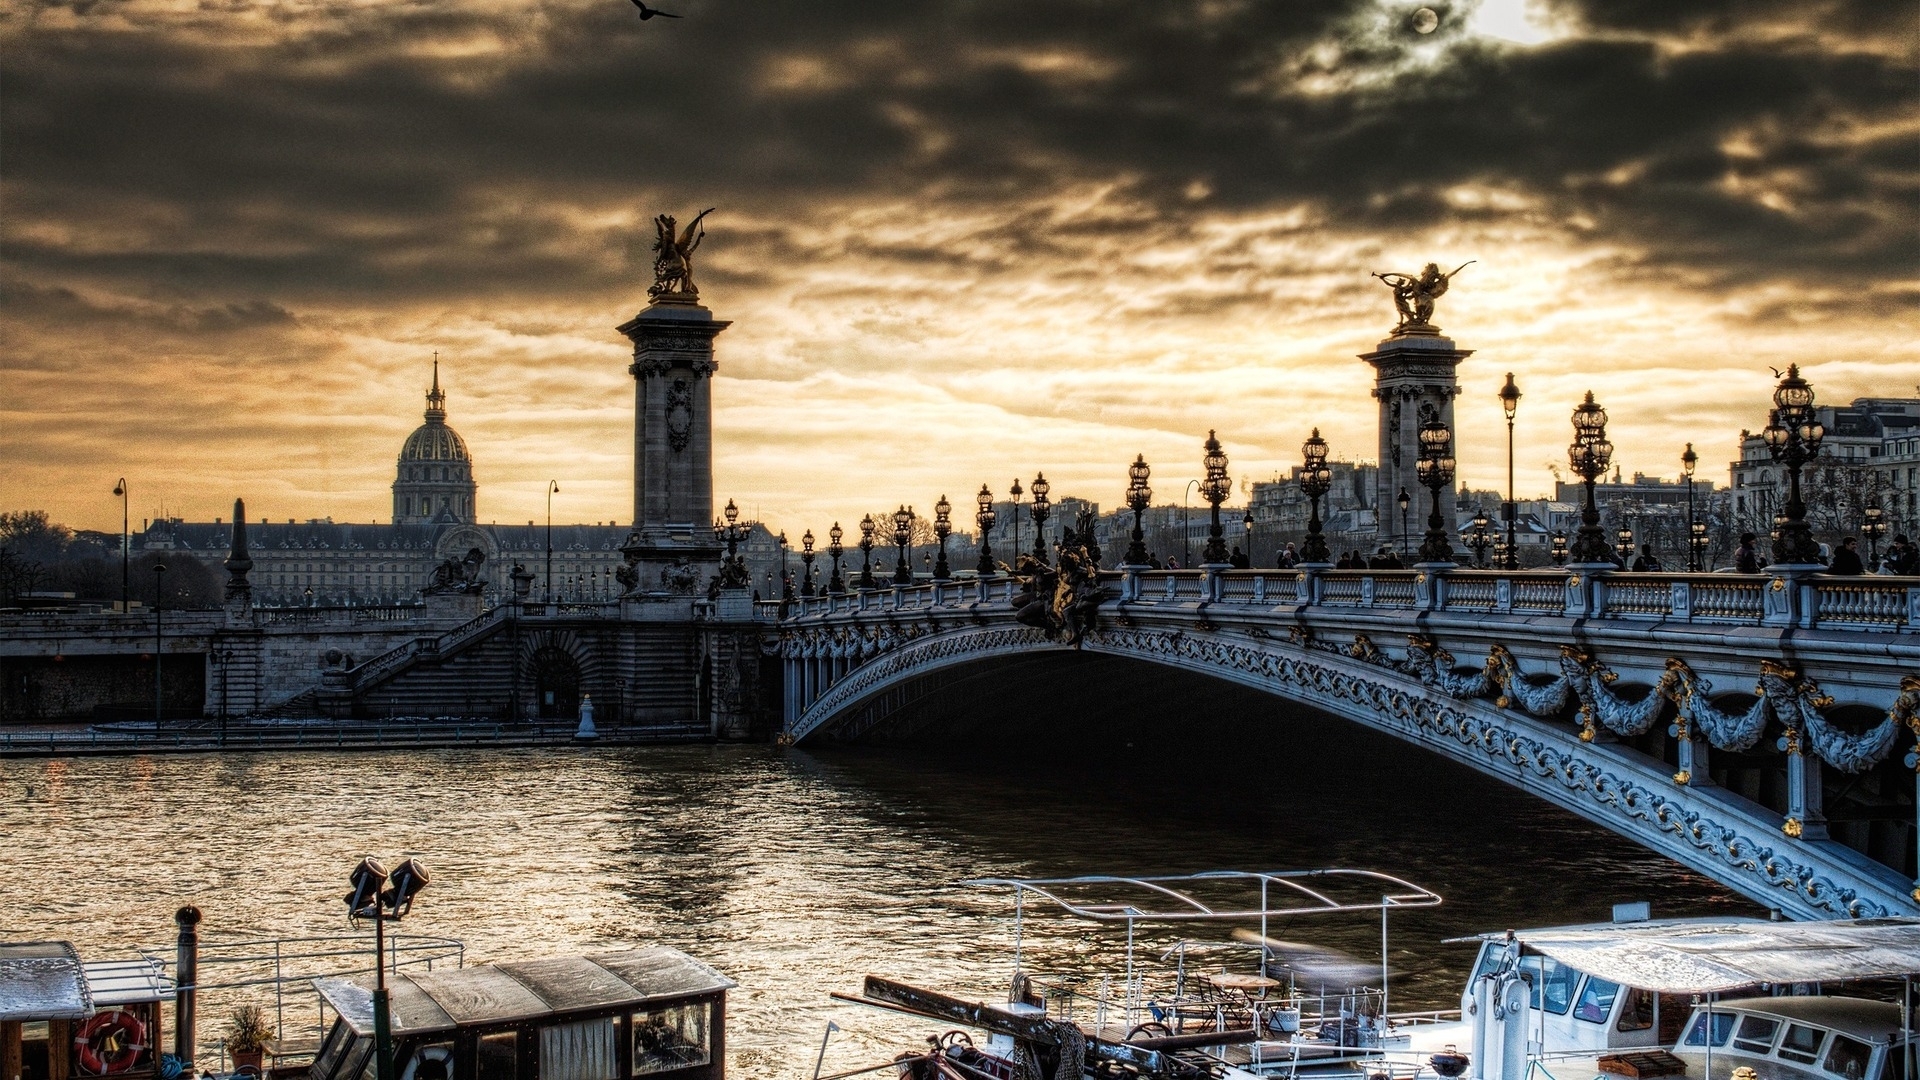 Free download wallpaper Cities, Rivers, Bridges, Landscape, London on your PC desktop